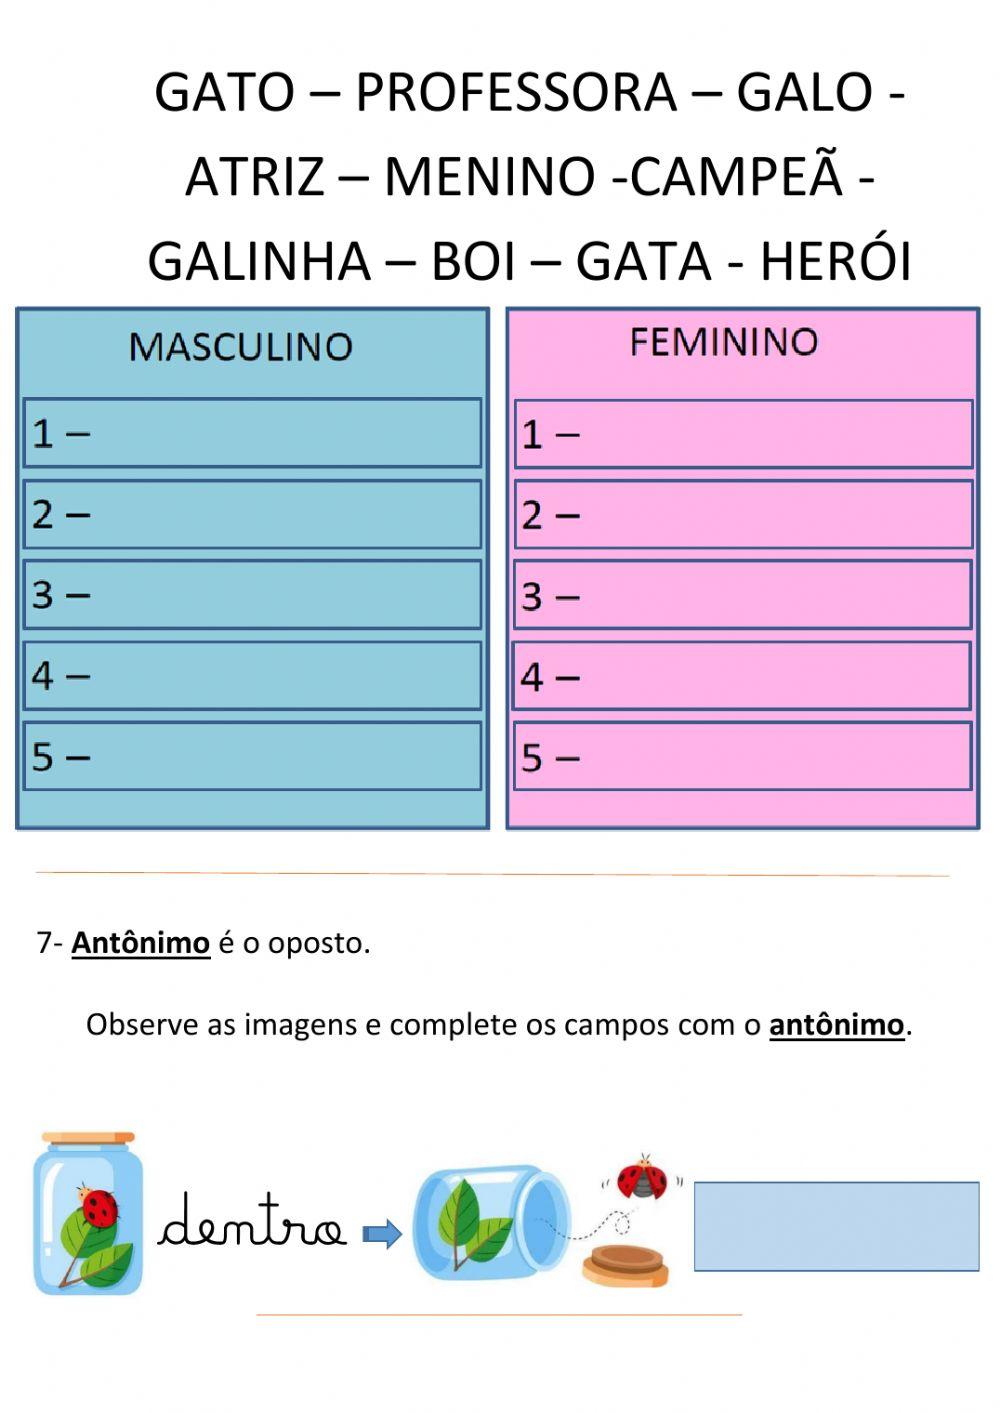 Exame Final de Língua Portuguesa